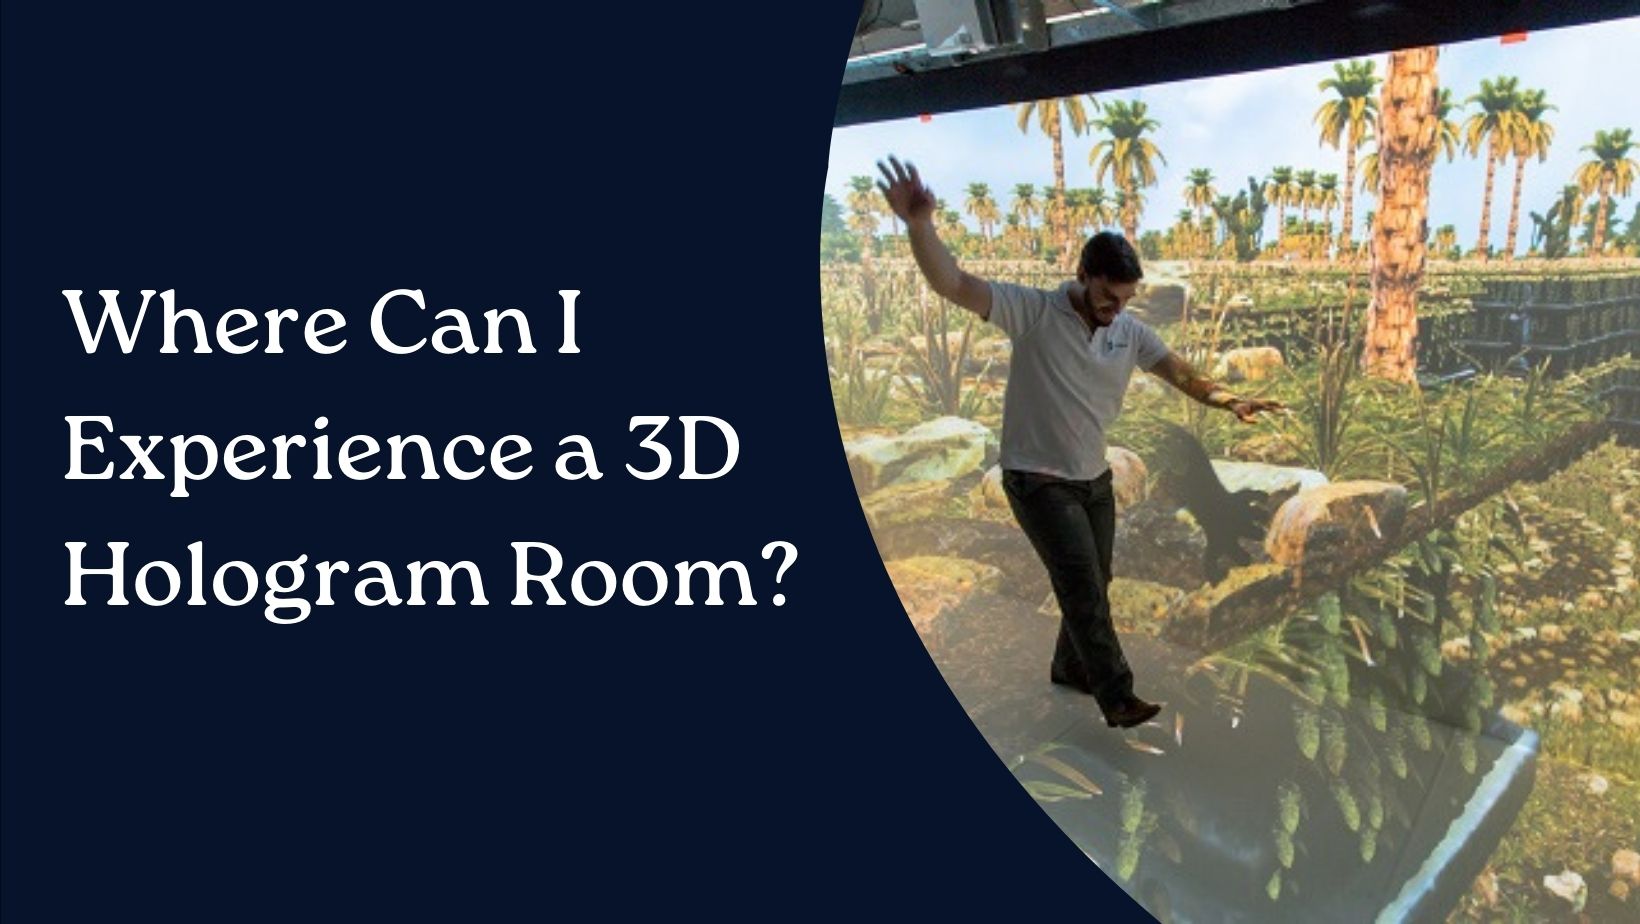 3D Hologram Room - Vision 3d